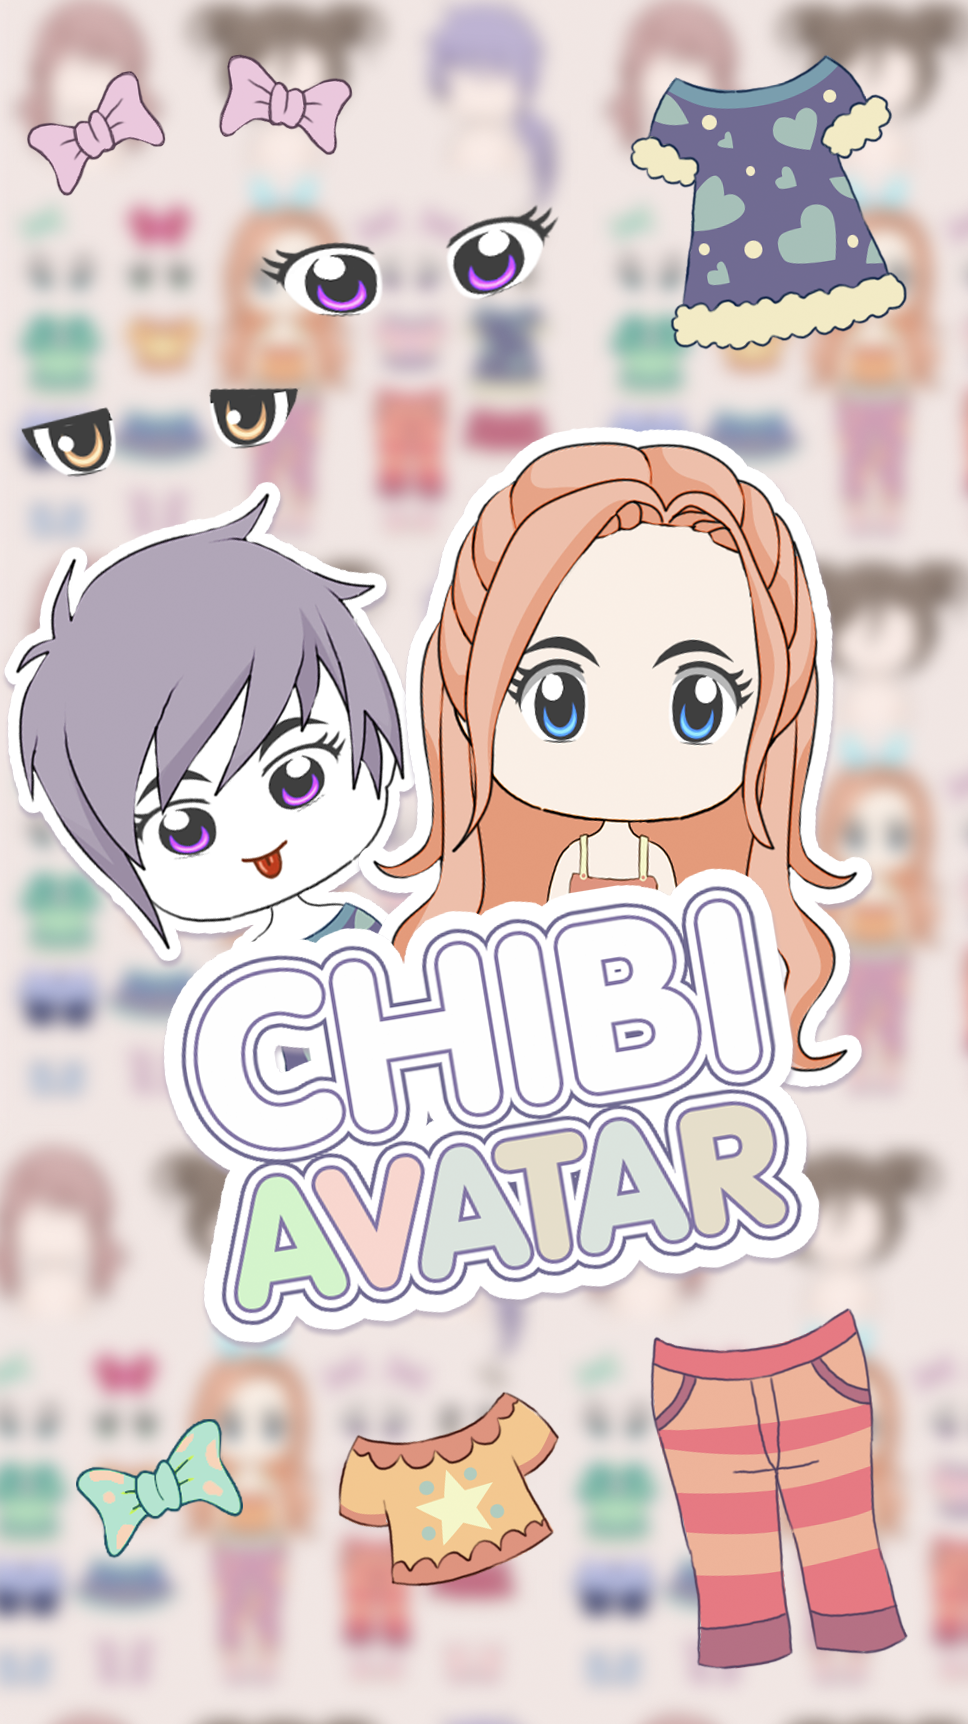 Chibi Avatar: Cute Doll Avatar Makerのキャプチャ